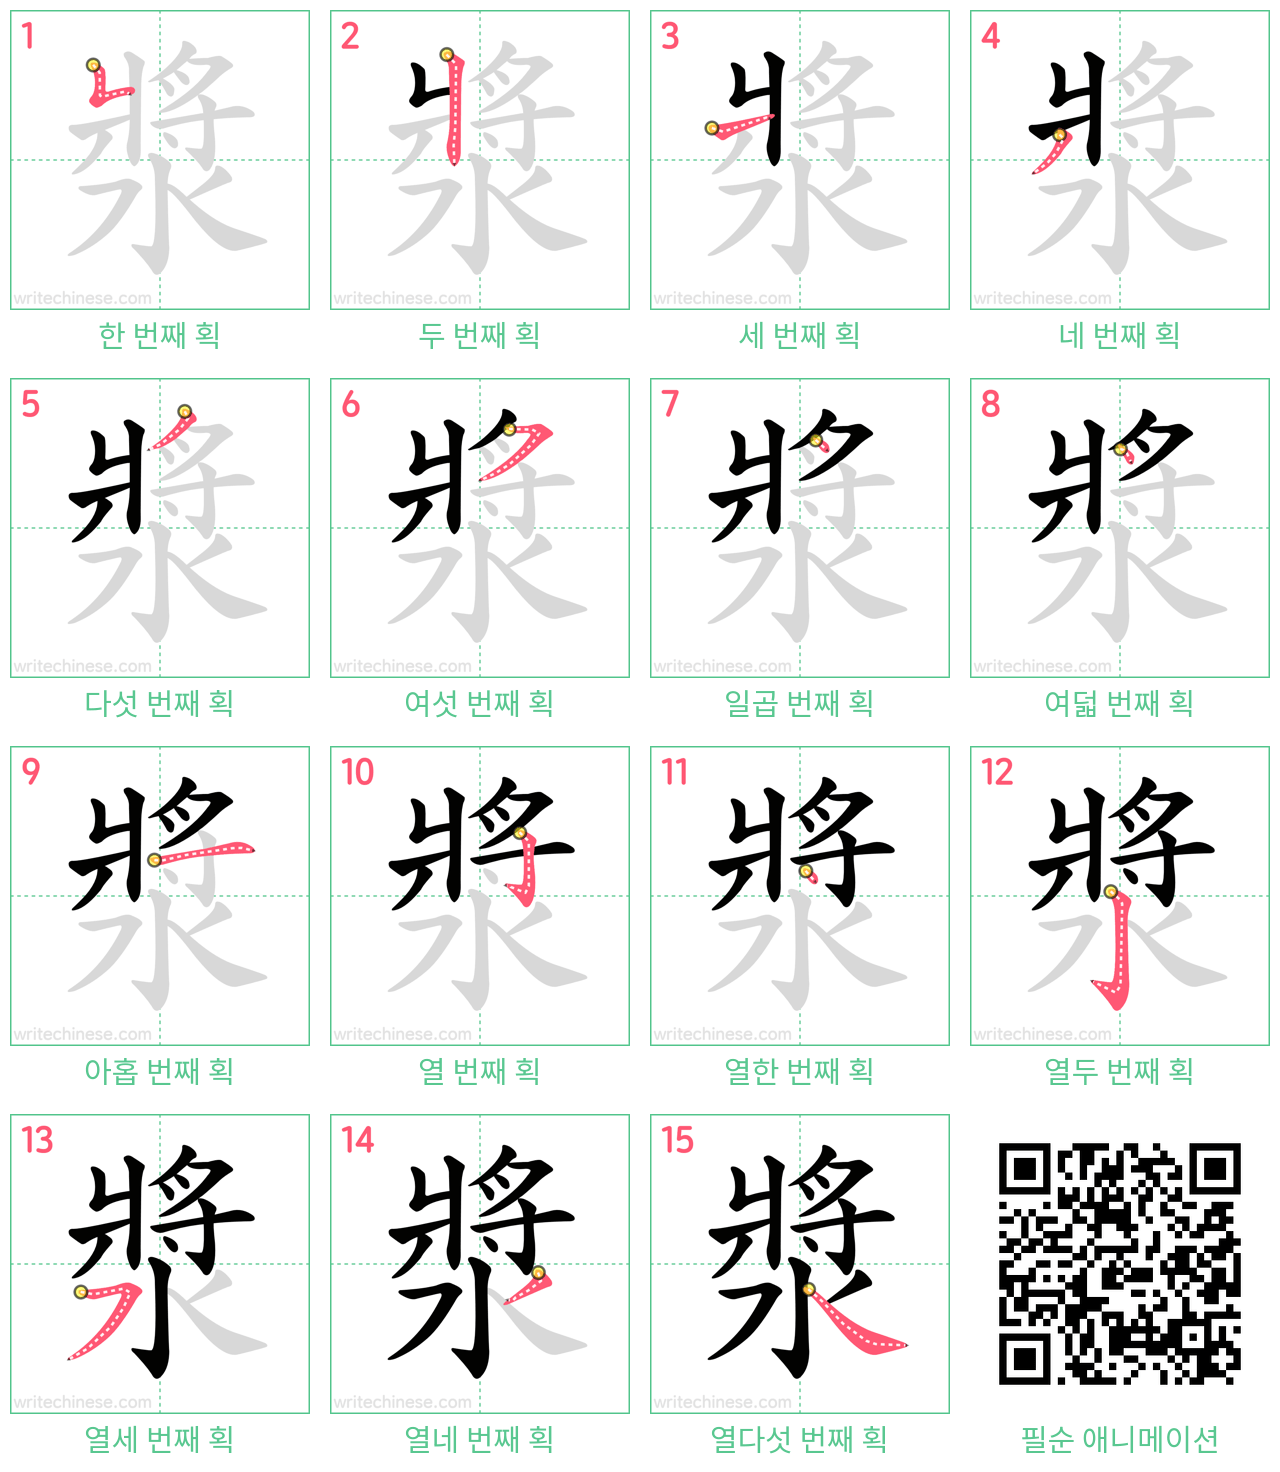 漿 step-by-step stroke order diagrams